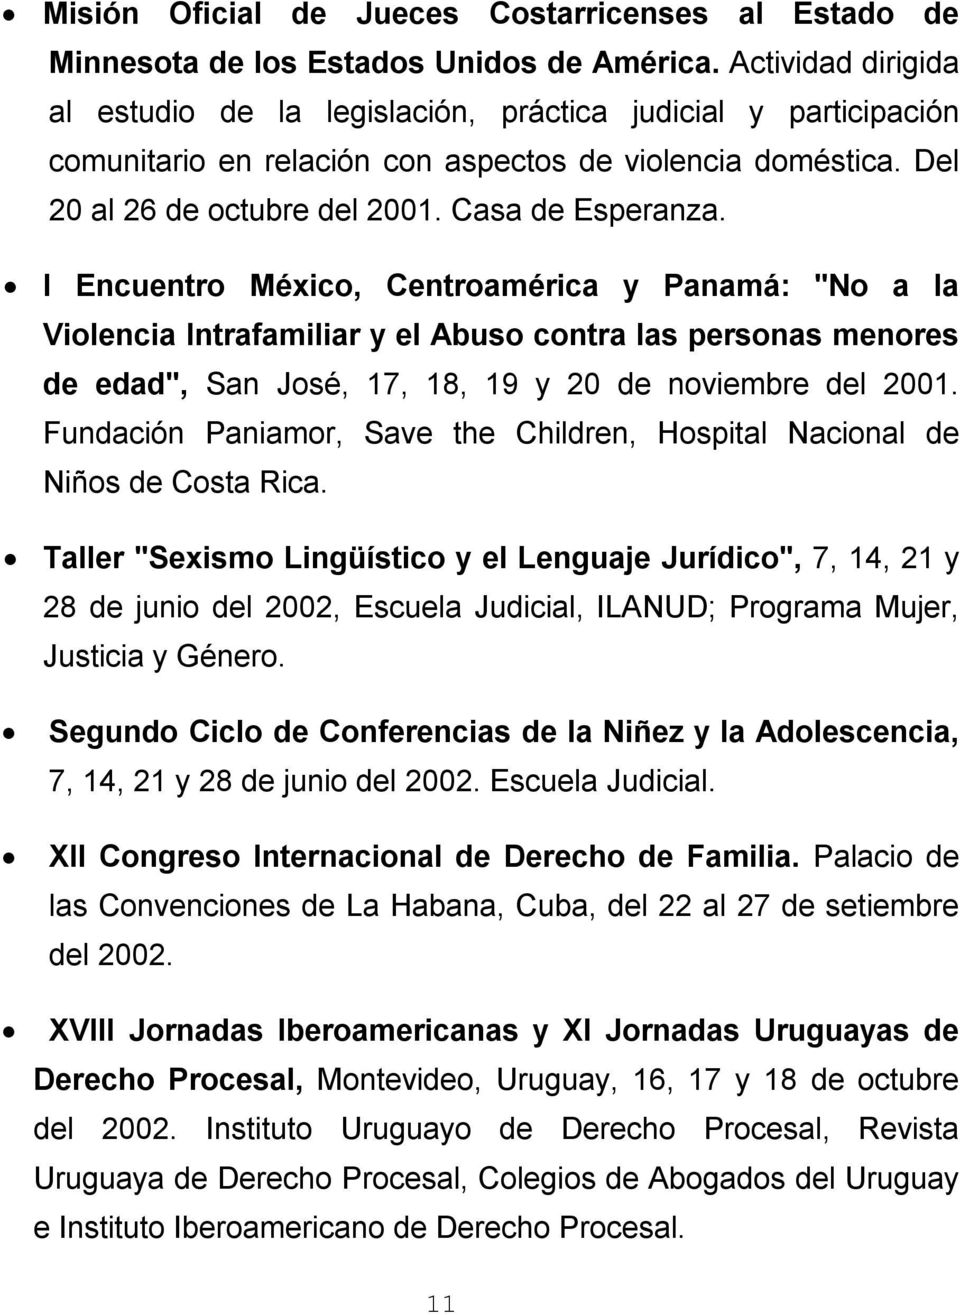 I Encuentro México, Centroamérica y Panamá: "No a la Violencia Intrafamiliar y el Abuso contra las personas menores de edad", San José, 17, 18, 19 y 20 de noviembre del 2001.